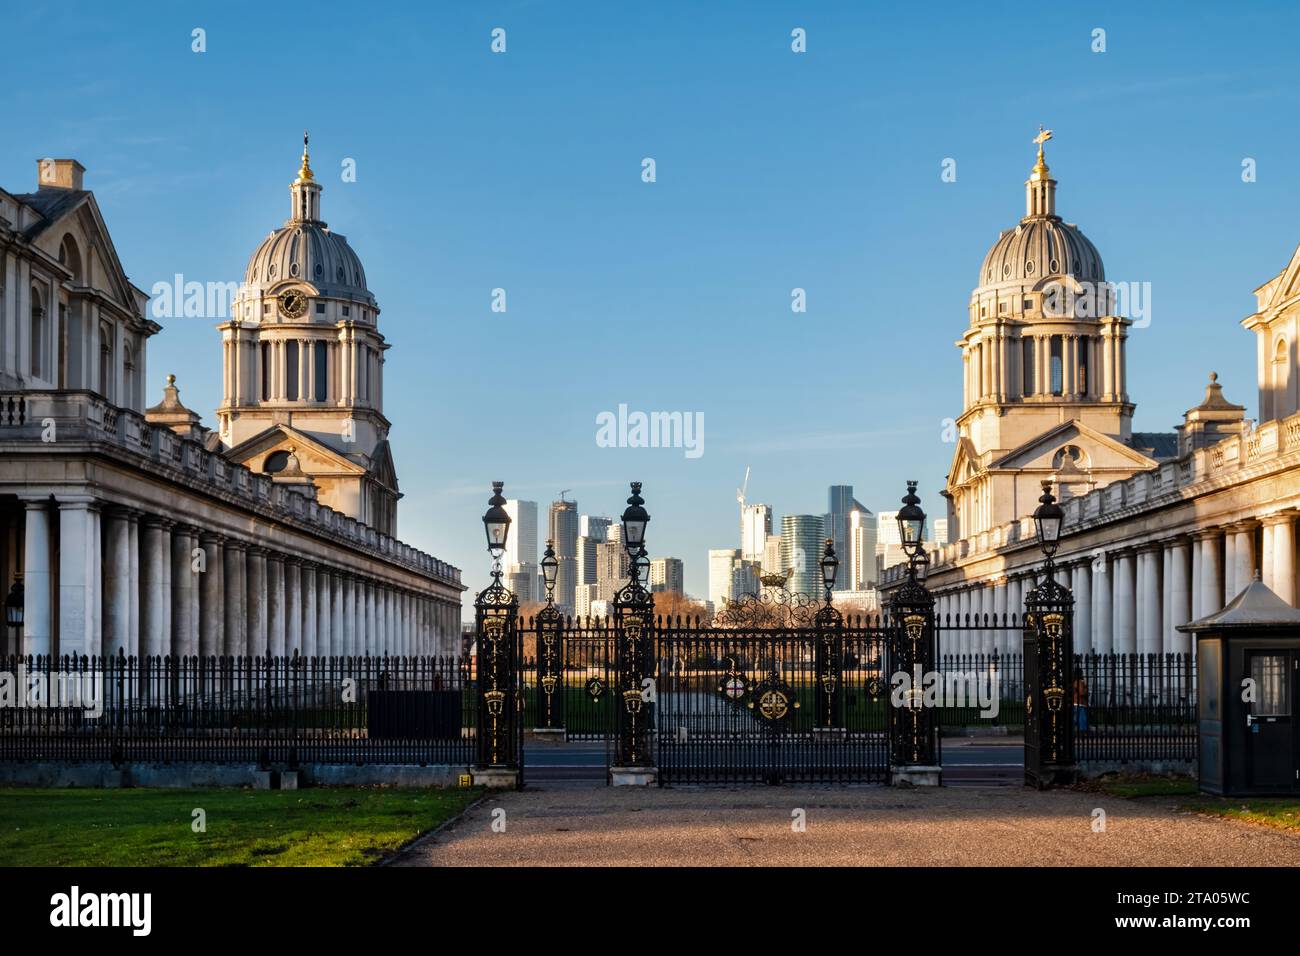 Vista dalla Queen's House dell'Old Royal Naval College, Greenwich, Londra, Regno Unito con il business center Canary Wharf sullo sfondo Foto Stock